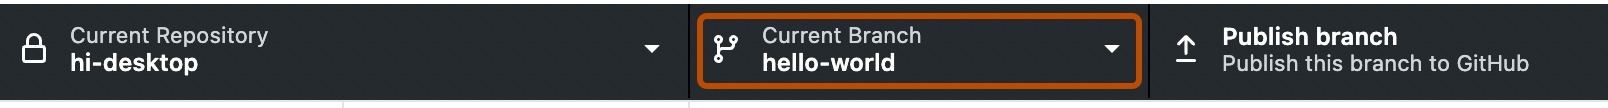 Capture d’écran de la barre du dépôt. Un bouton, intitulé « Current Branch » avec une flèche vers le bas indiquant un menu déroulant, est encadré en orange.